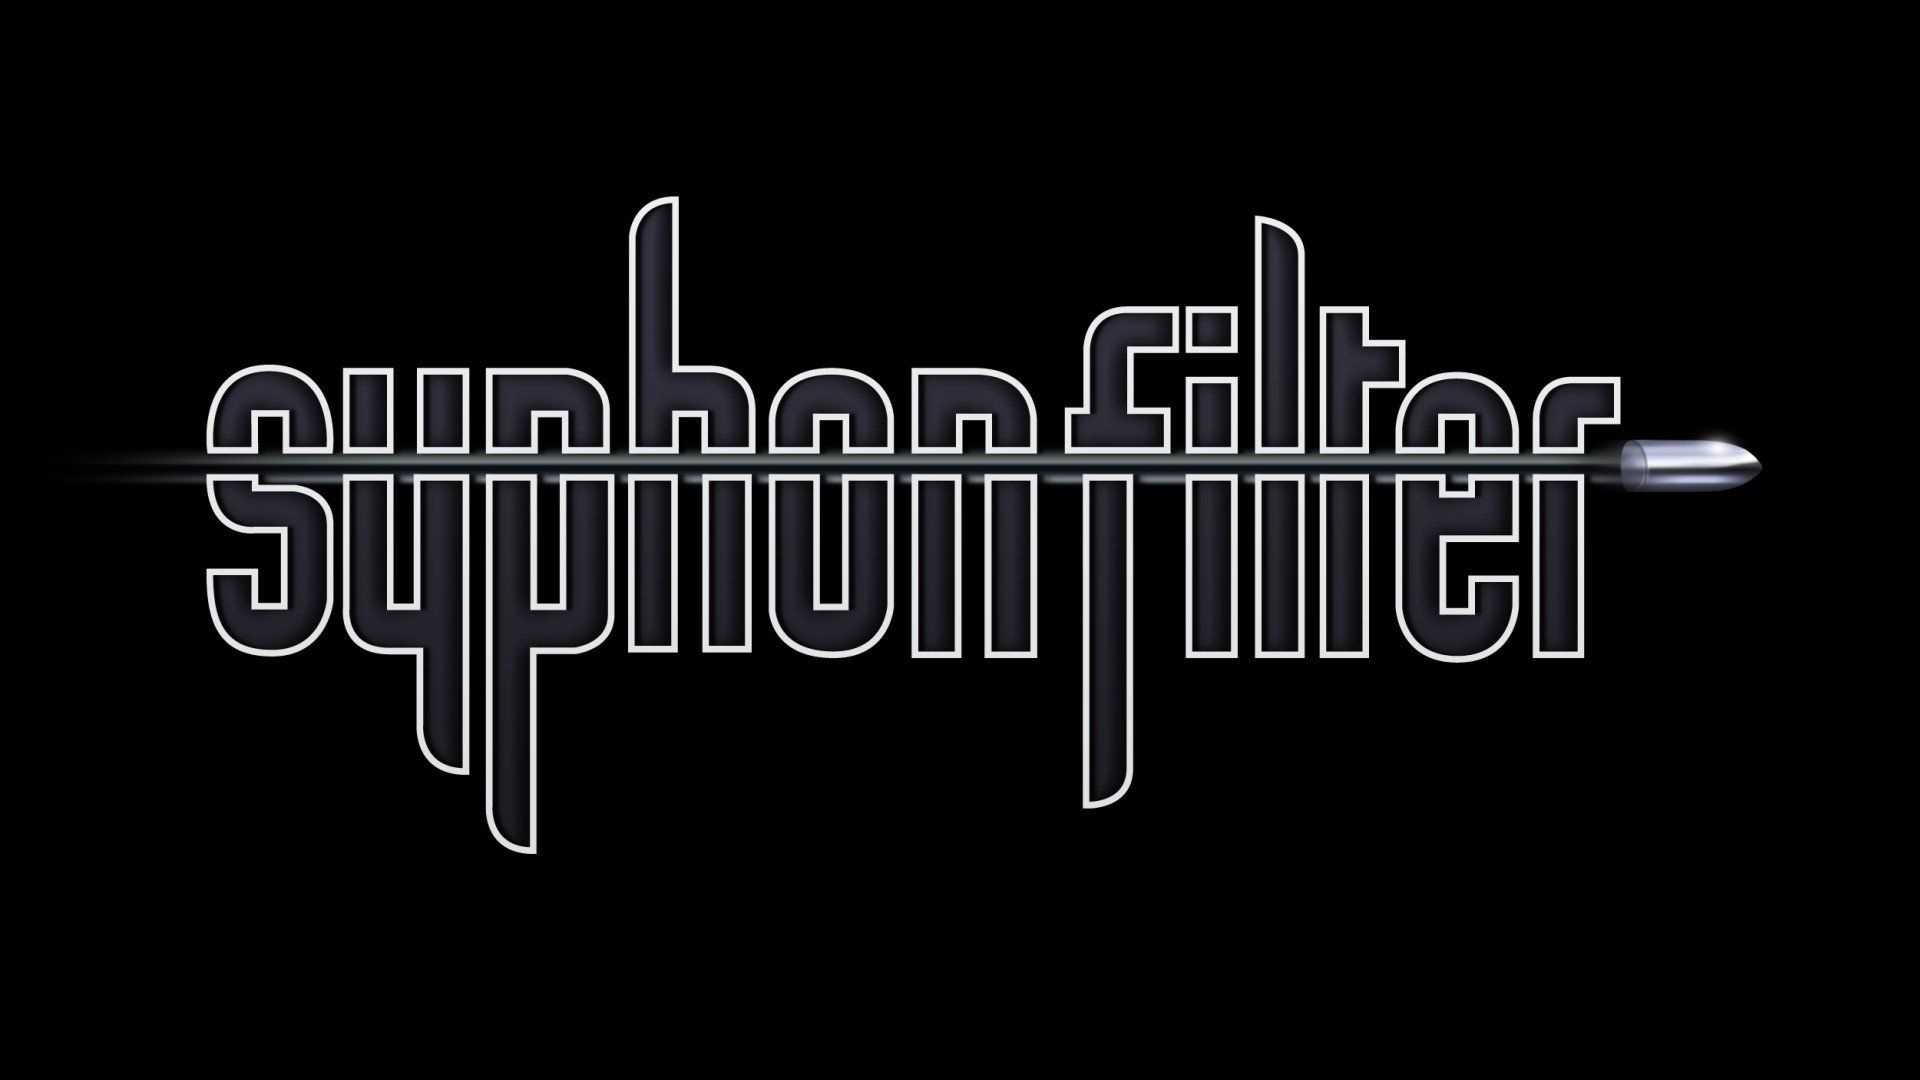 Syphon Filter Wallpaper